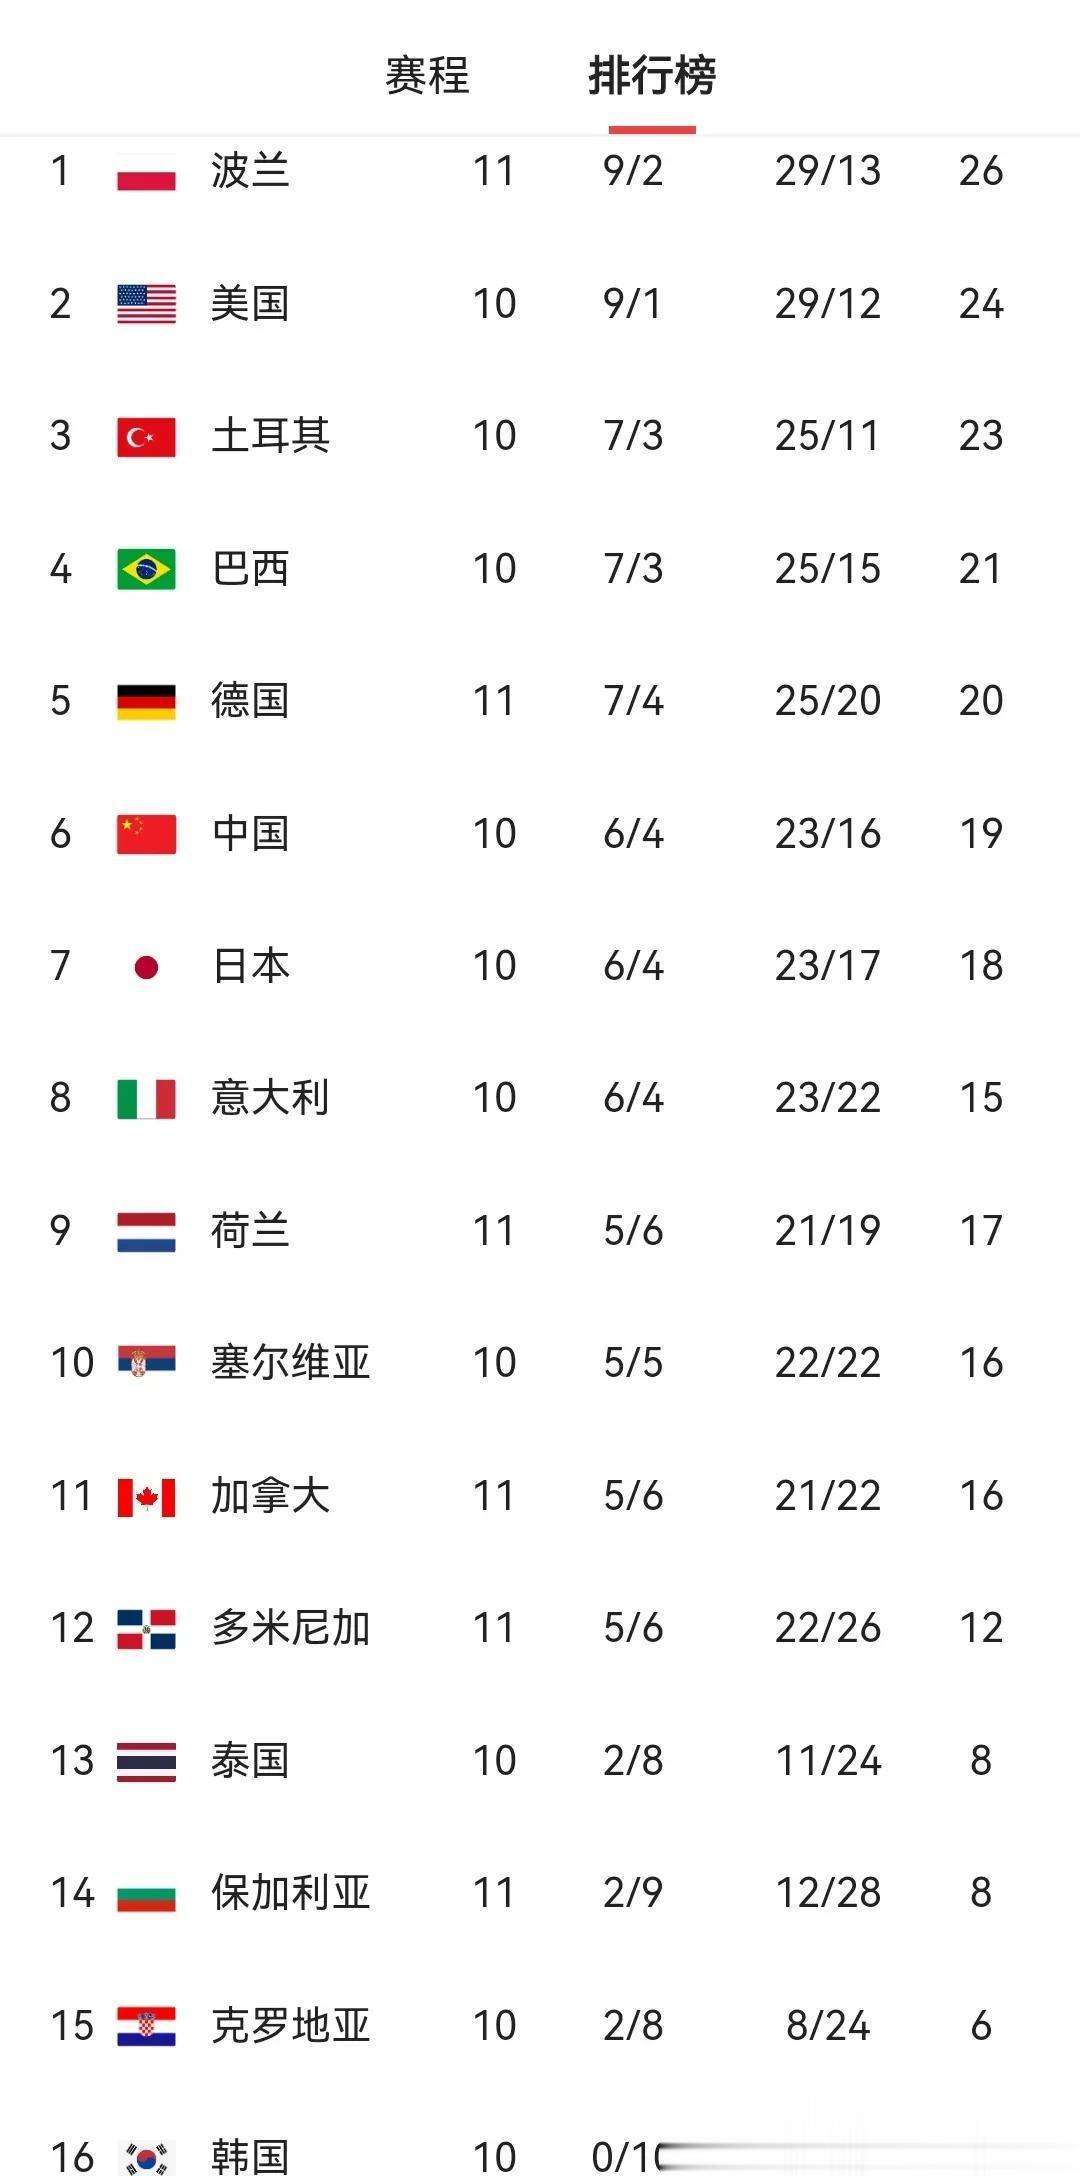 世界女排联赛积分榜最新变化
中国女排遭多米尼加逆转四连败
蔡斌的临场调度指挥真是(1)